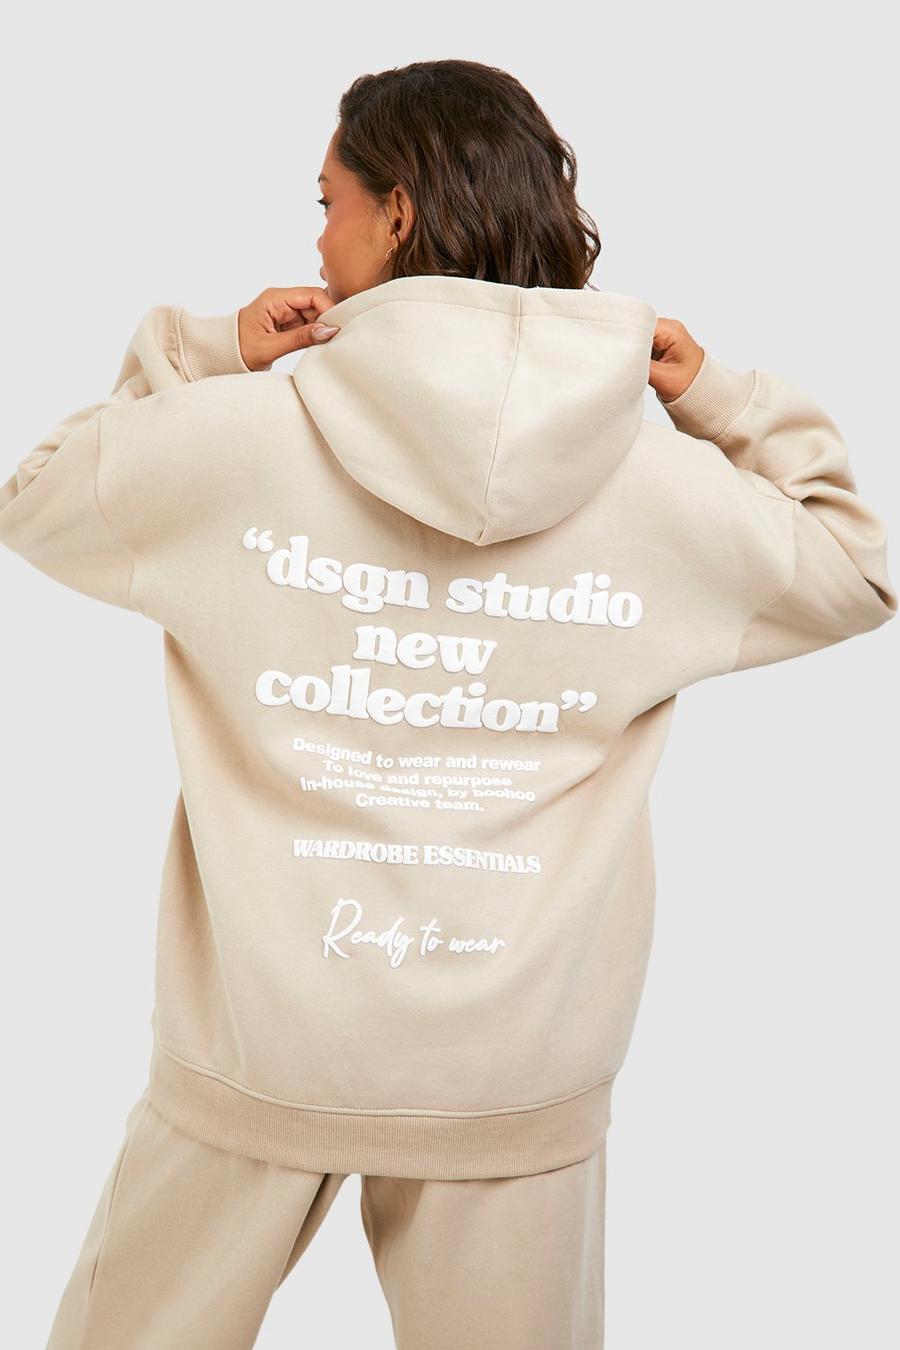 Chándal Dsgn Studio con capucha y eslogan en relieve, Stone beige